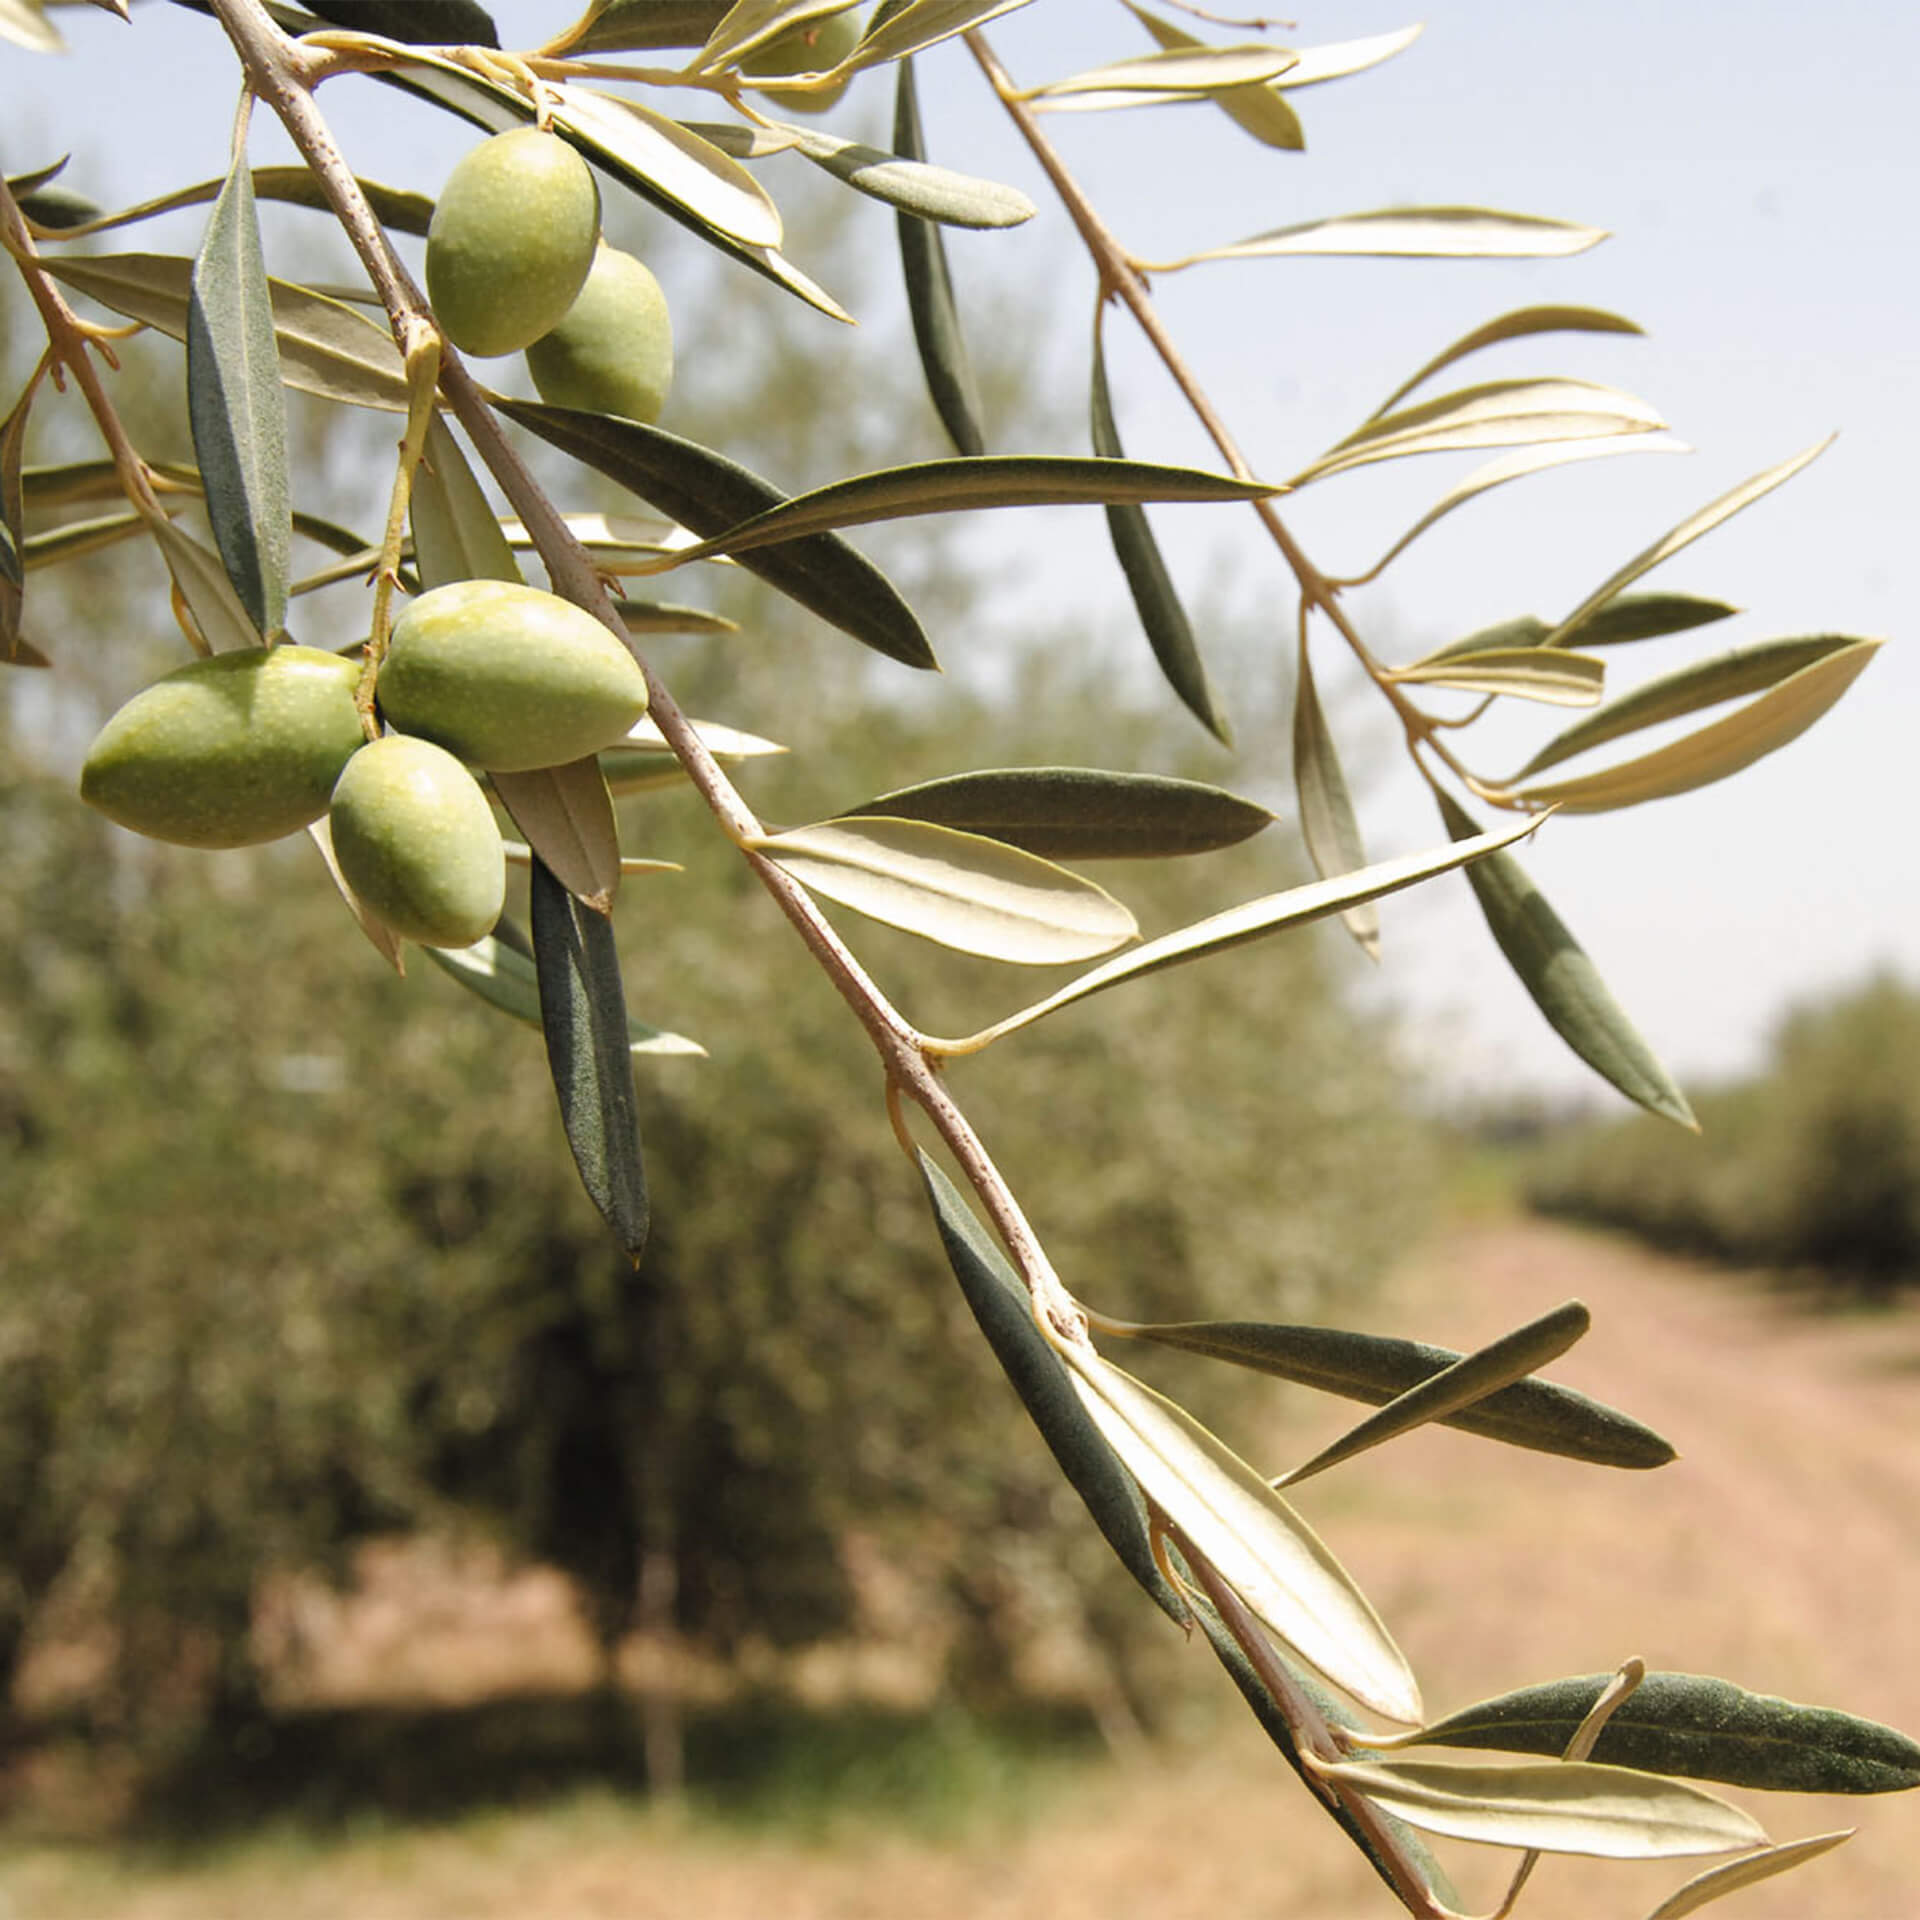 Desert olive trees